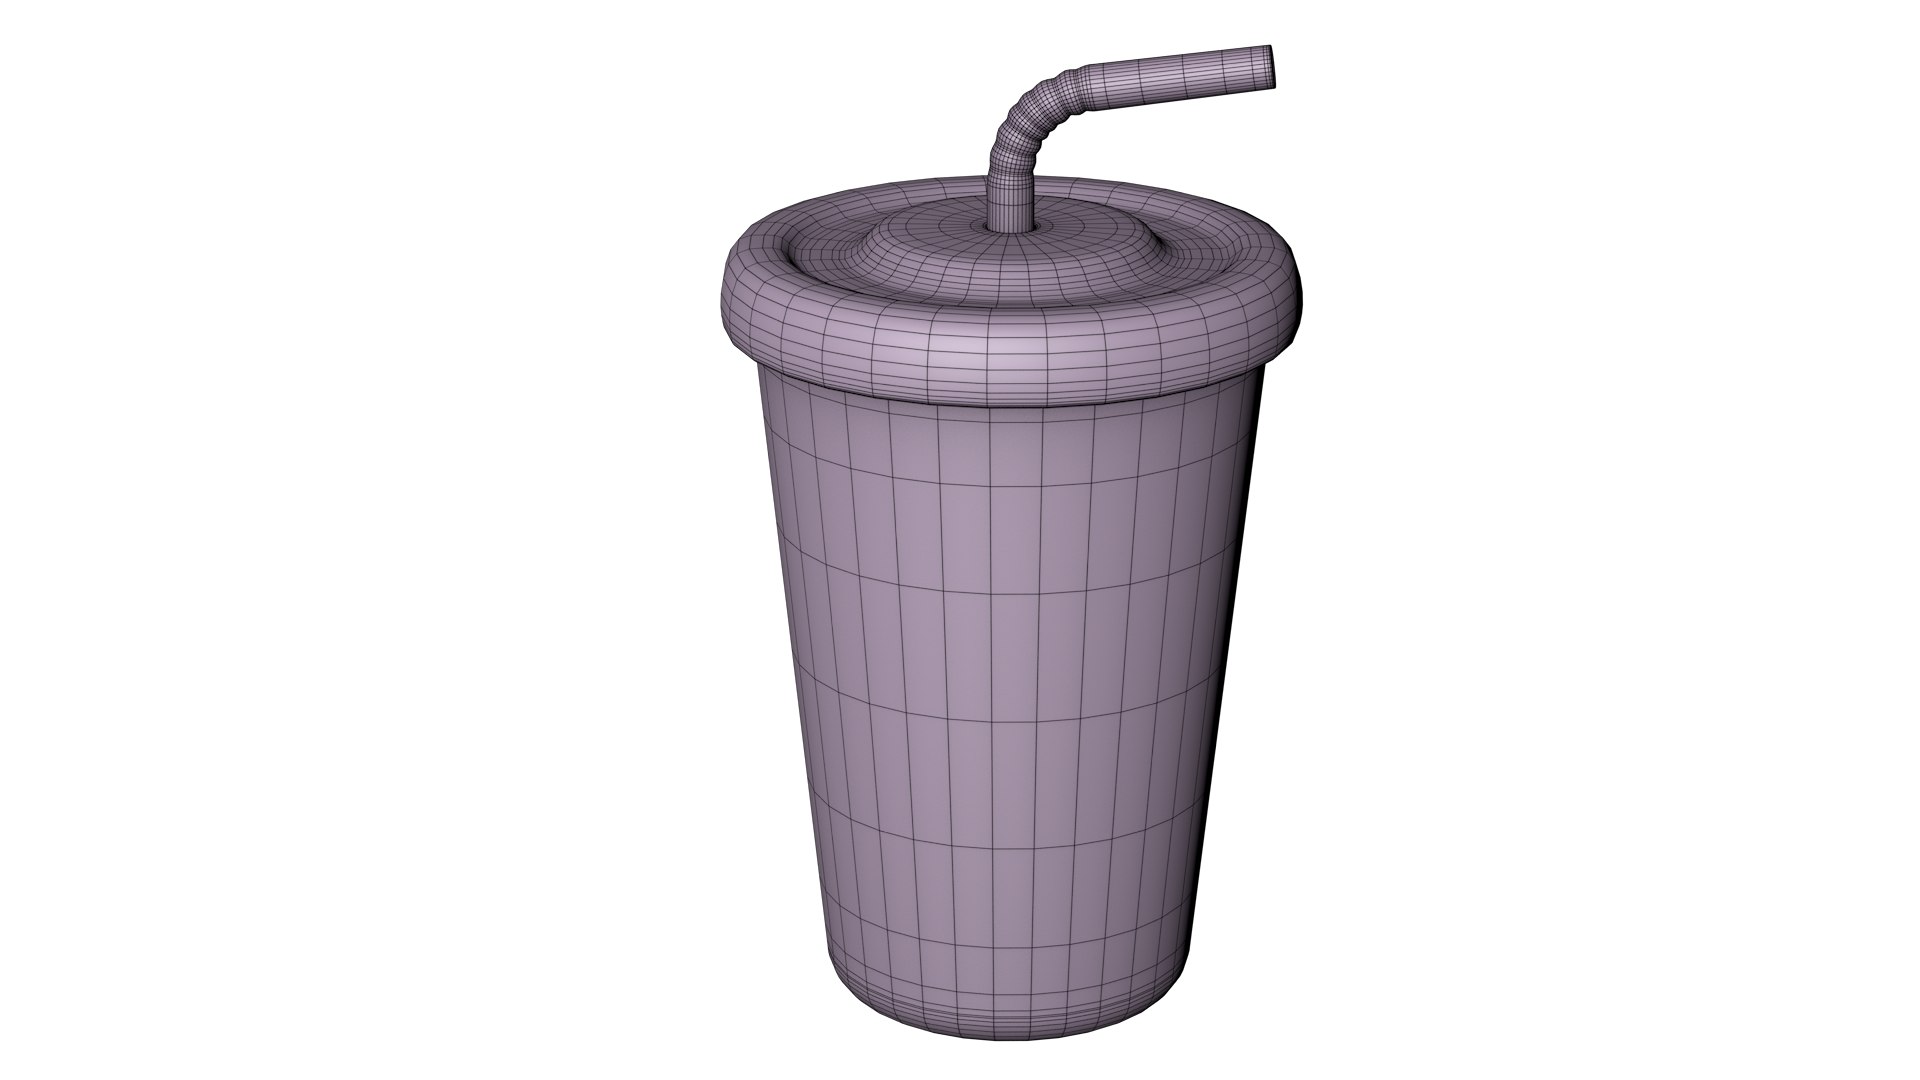 Soda cup model by funcMathias on DeviantArt